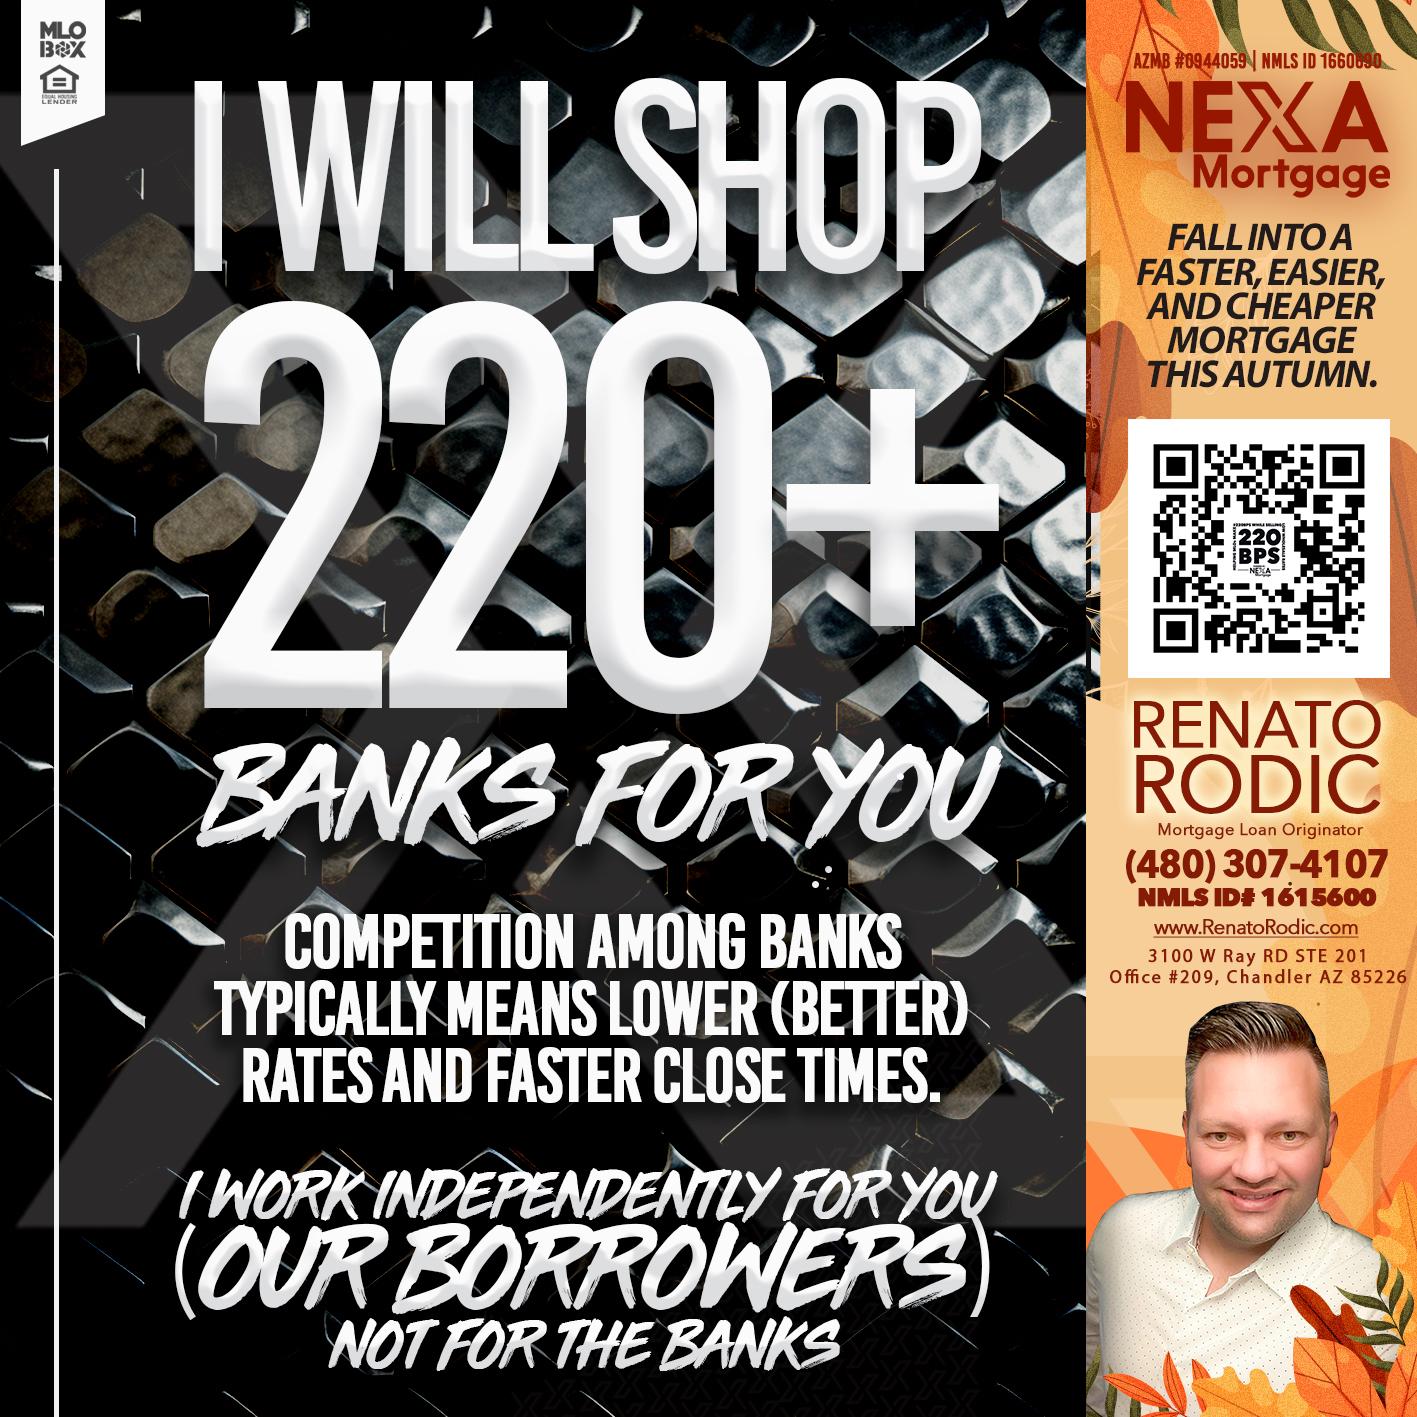 I WILL SHOP 220+ - Renato Rodic -Mortgage Loan Originator